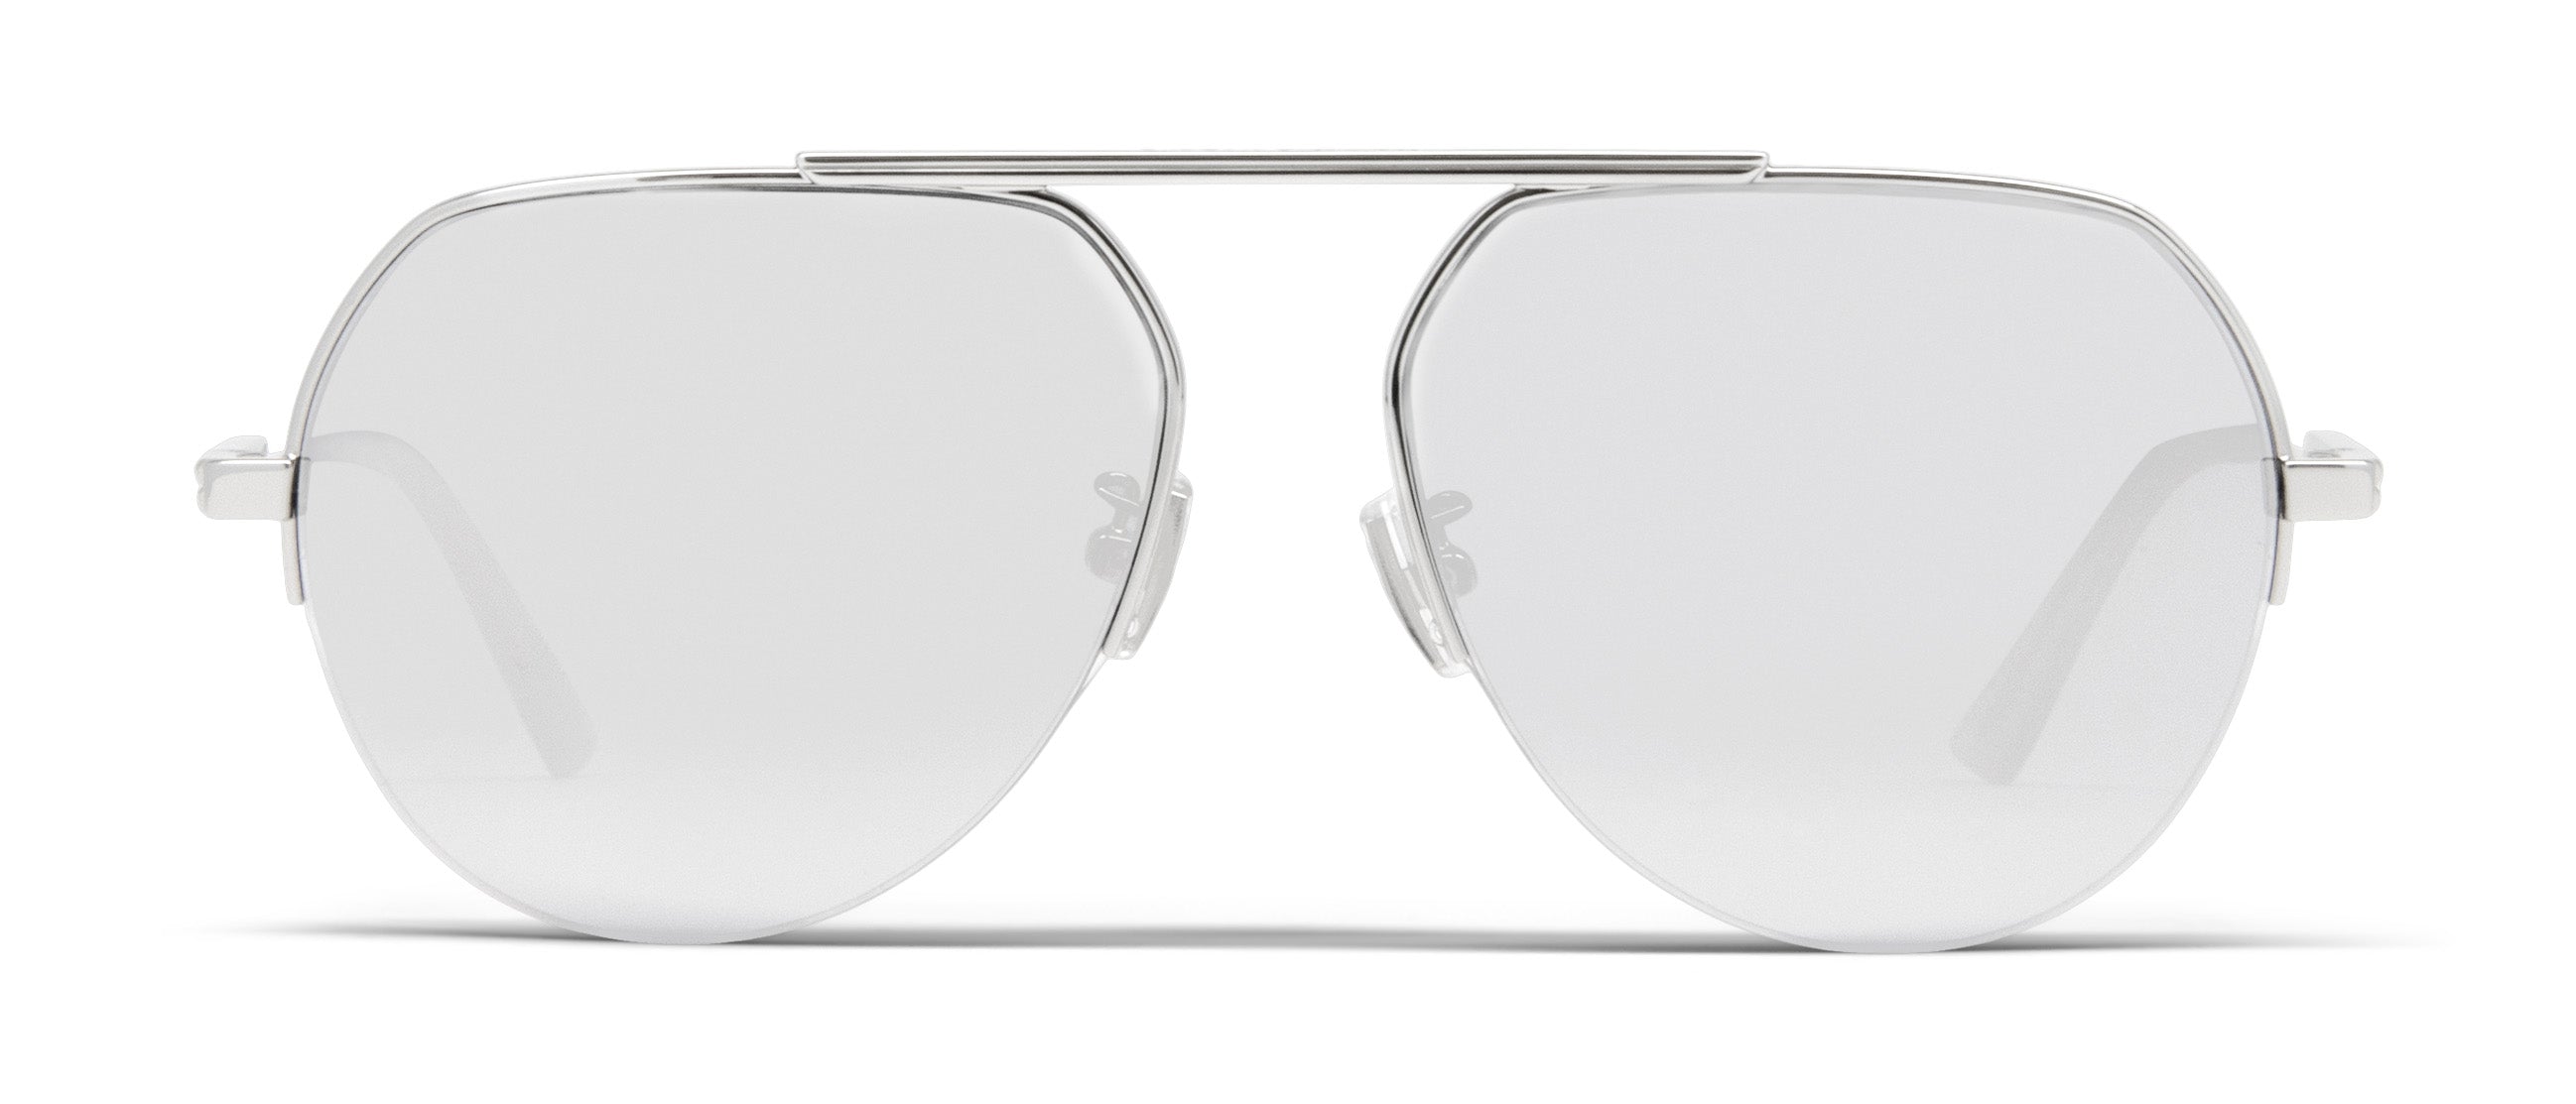 Bottega Veneta - Aviator Sunglasses - Silver - Sunglasses